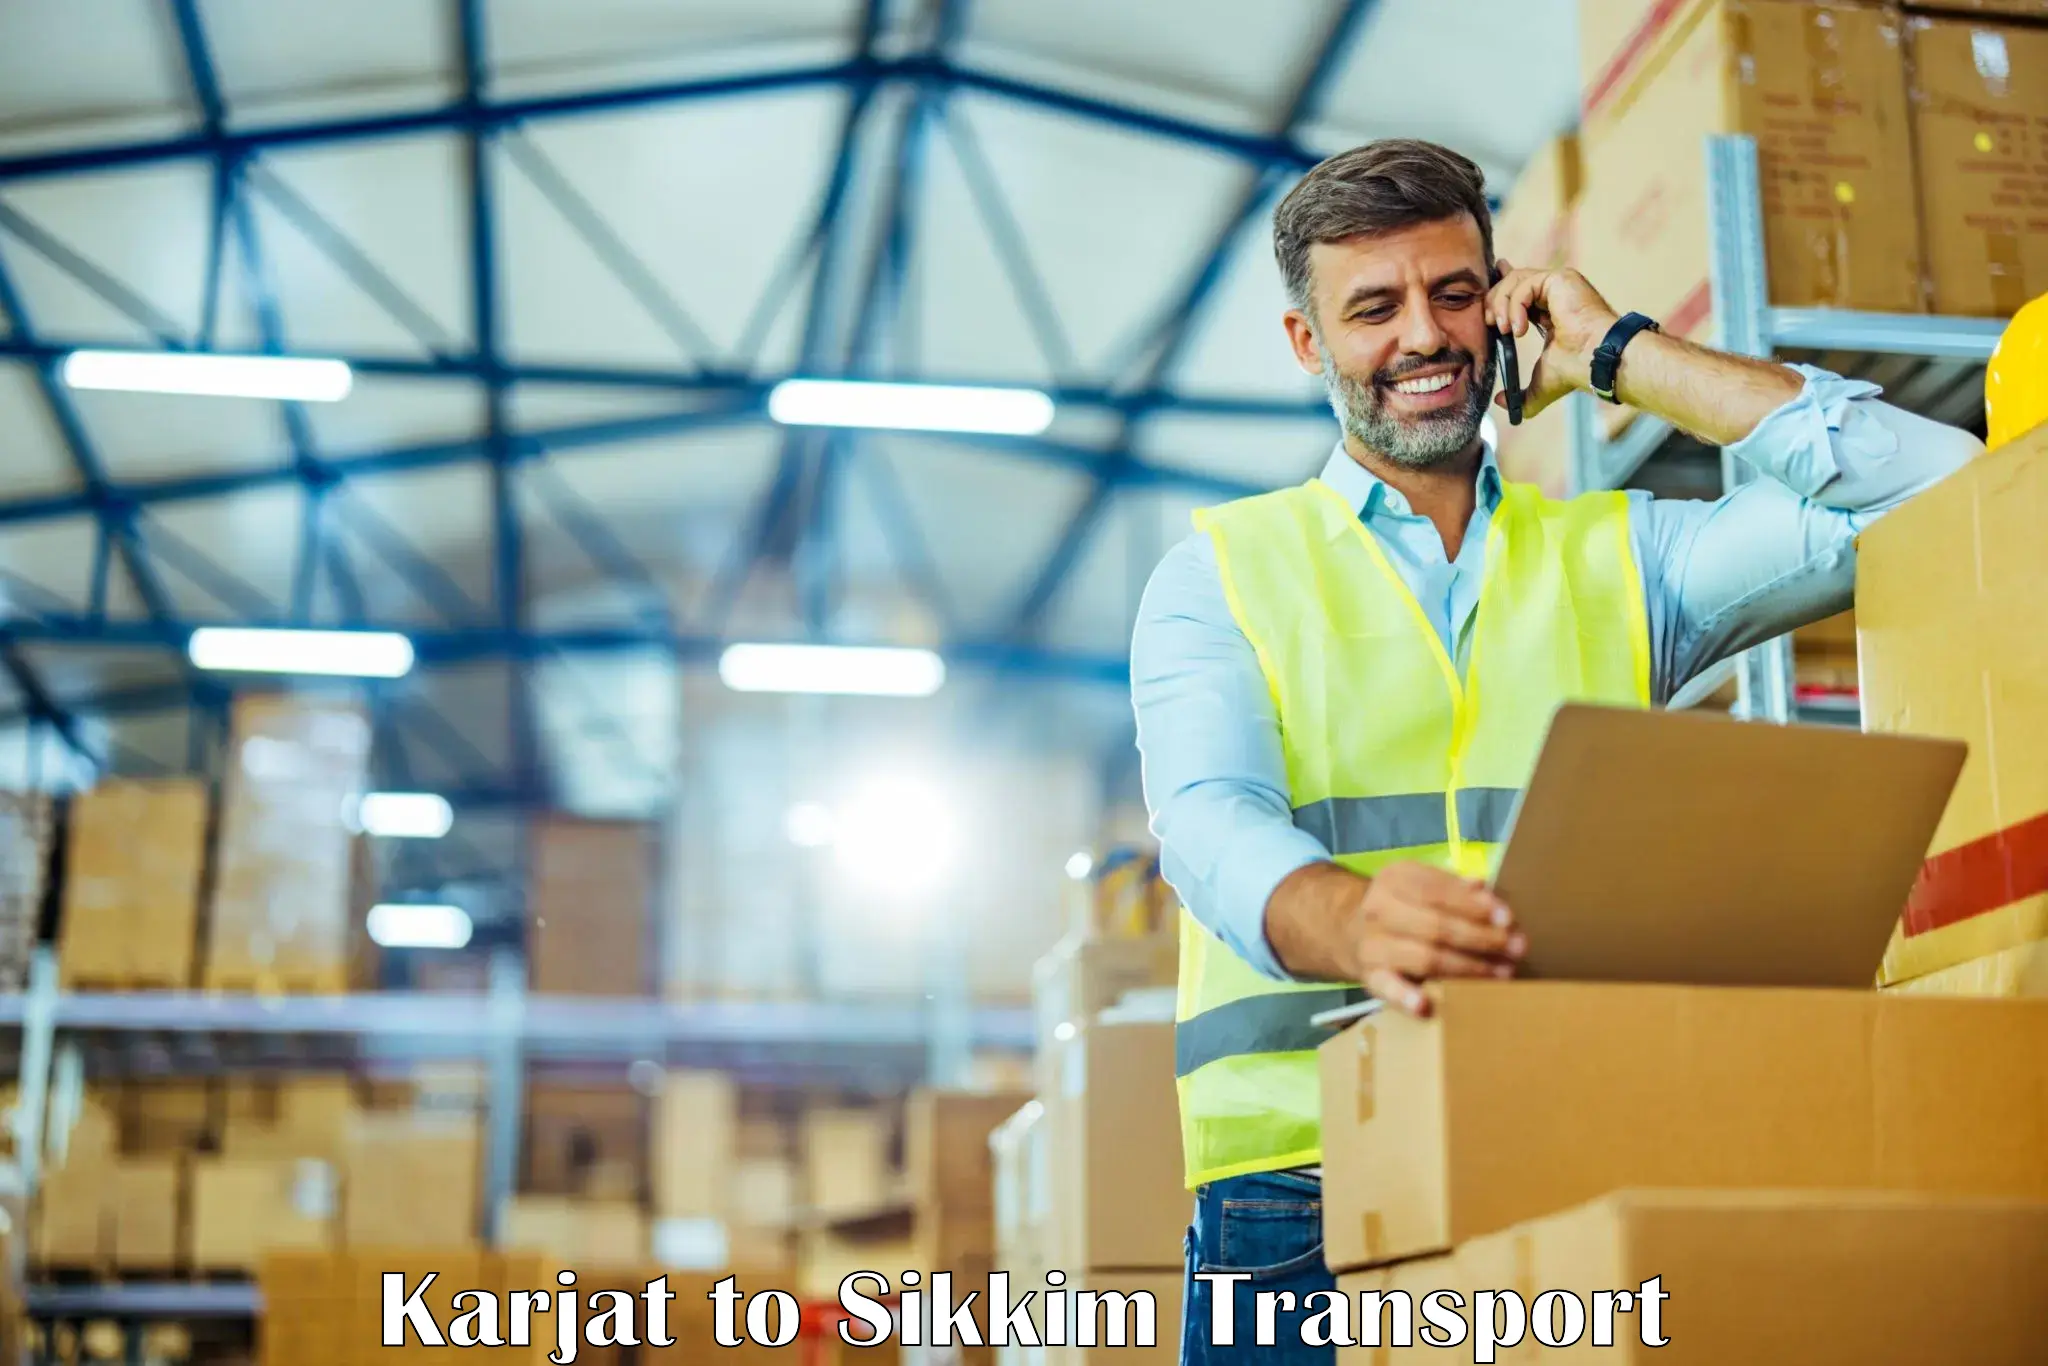 Road transport online services Karjat to Ravangla